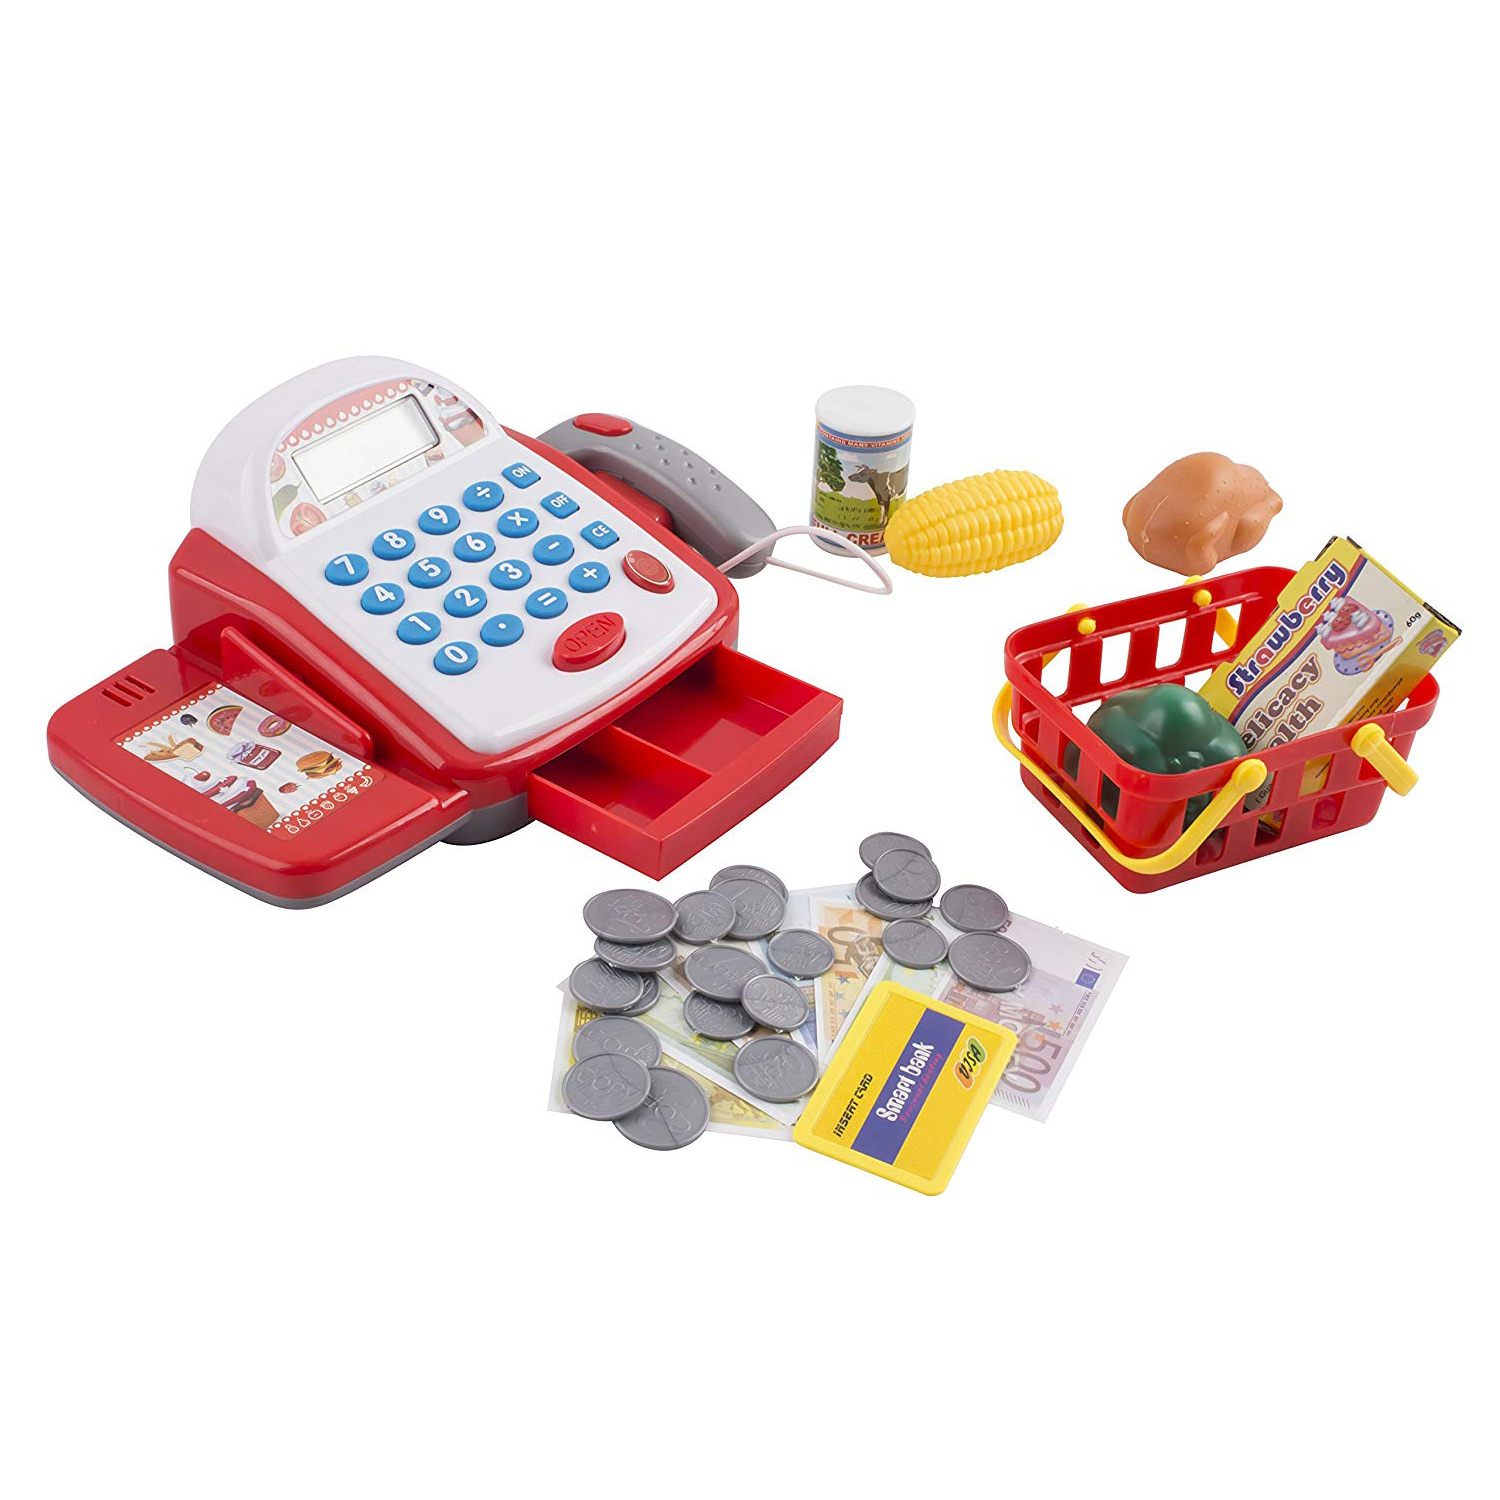 Toy cash register 6300